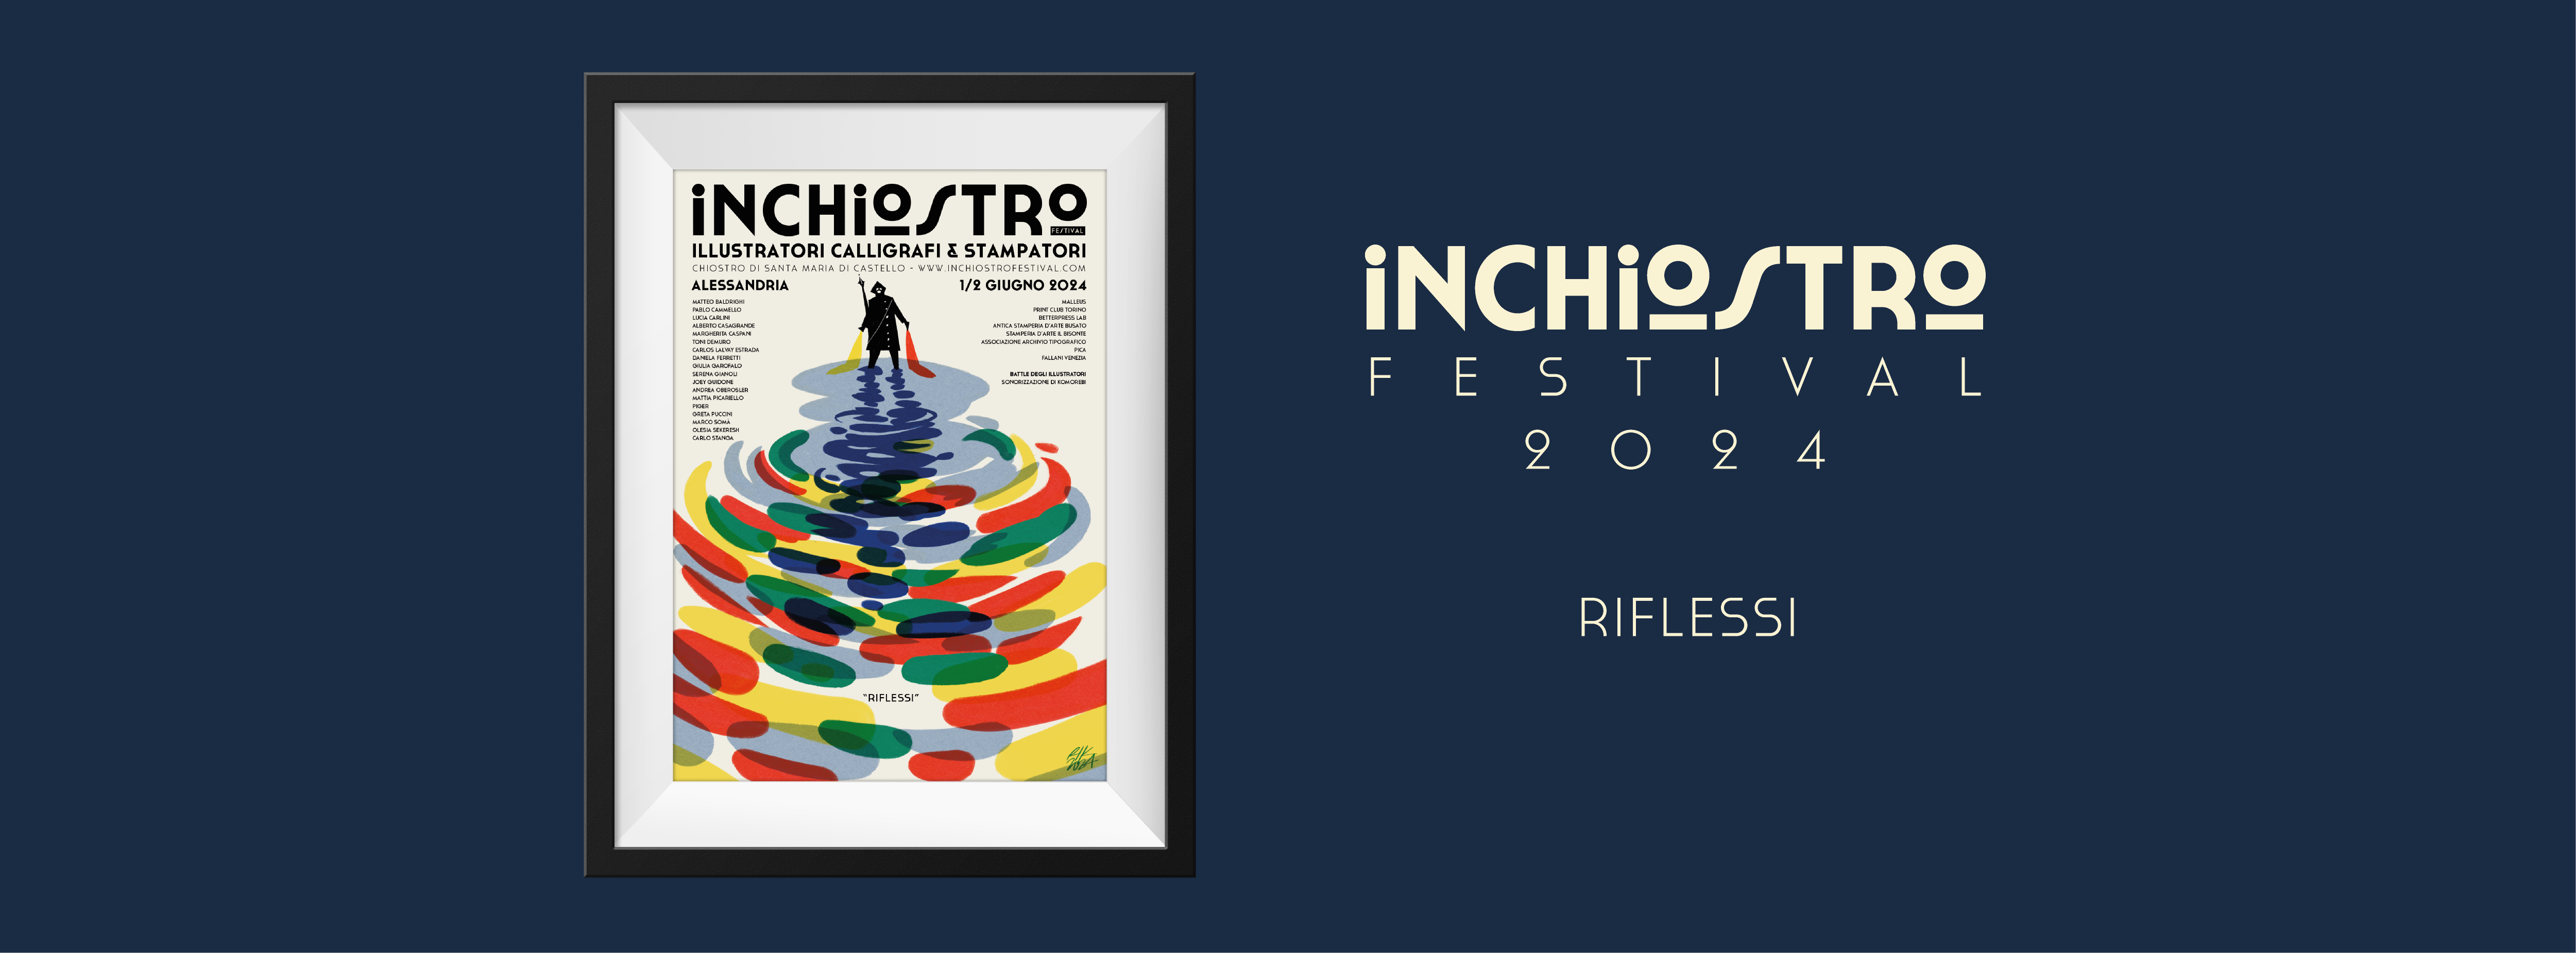 Inchiostro Festival 2024 "Riflessi" Manifesto realizzato da Riccardo Guasco